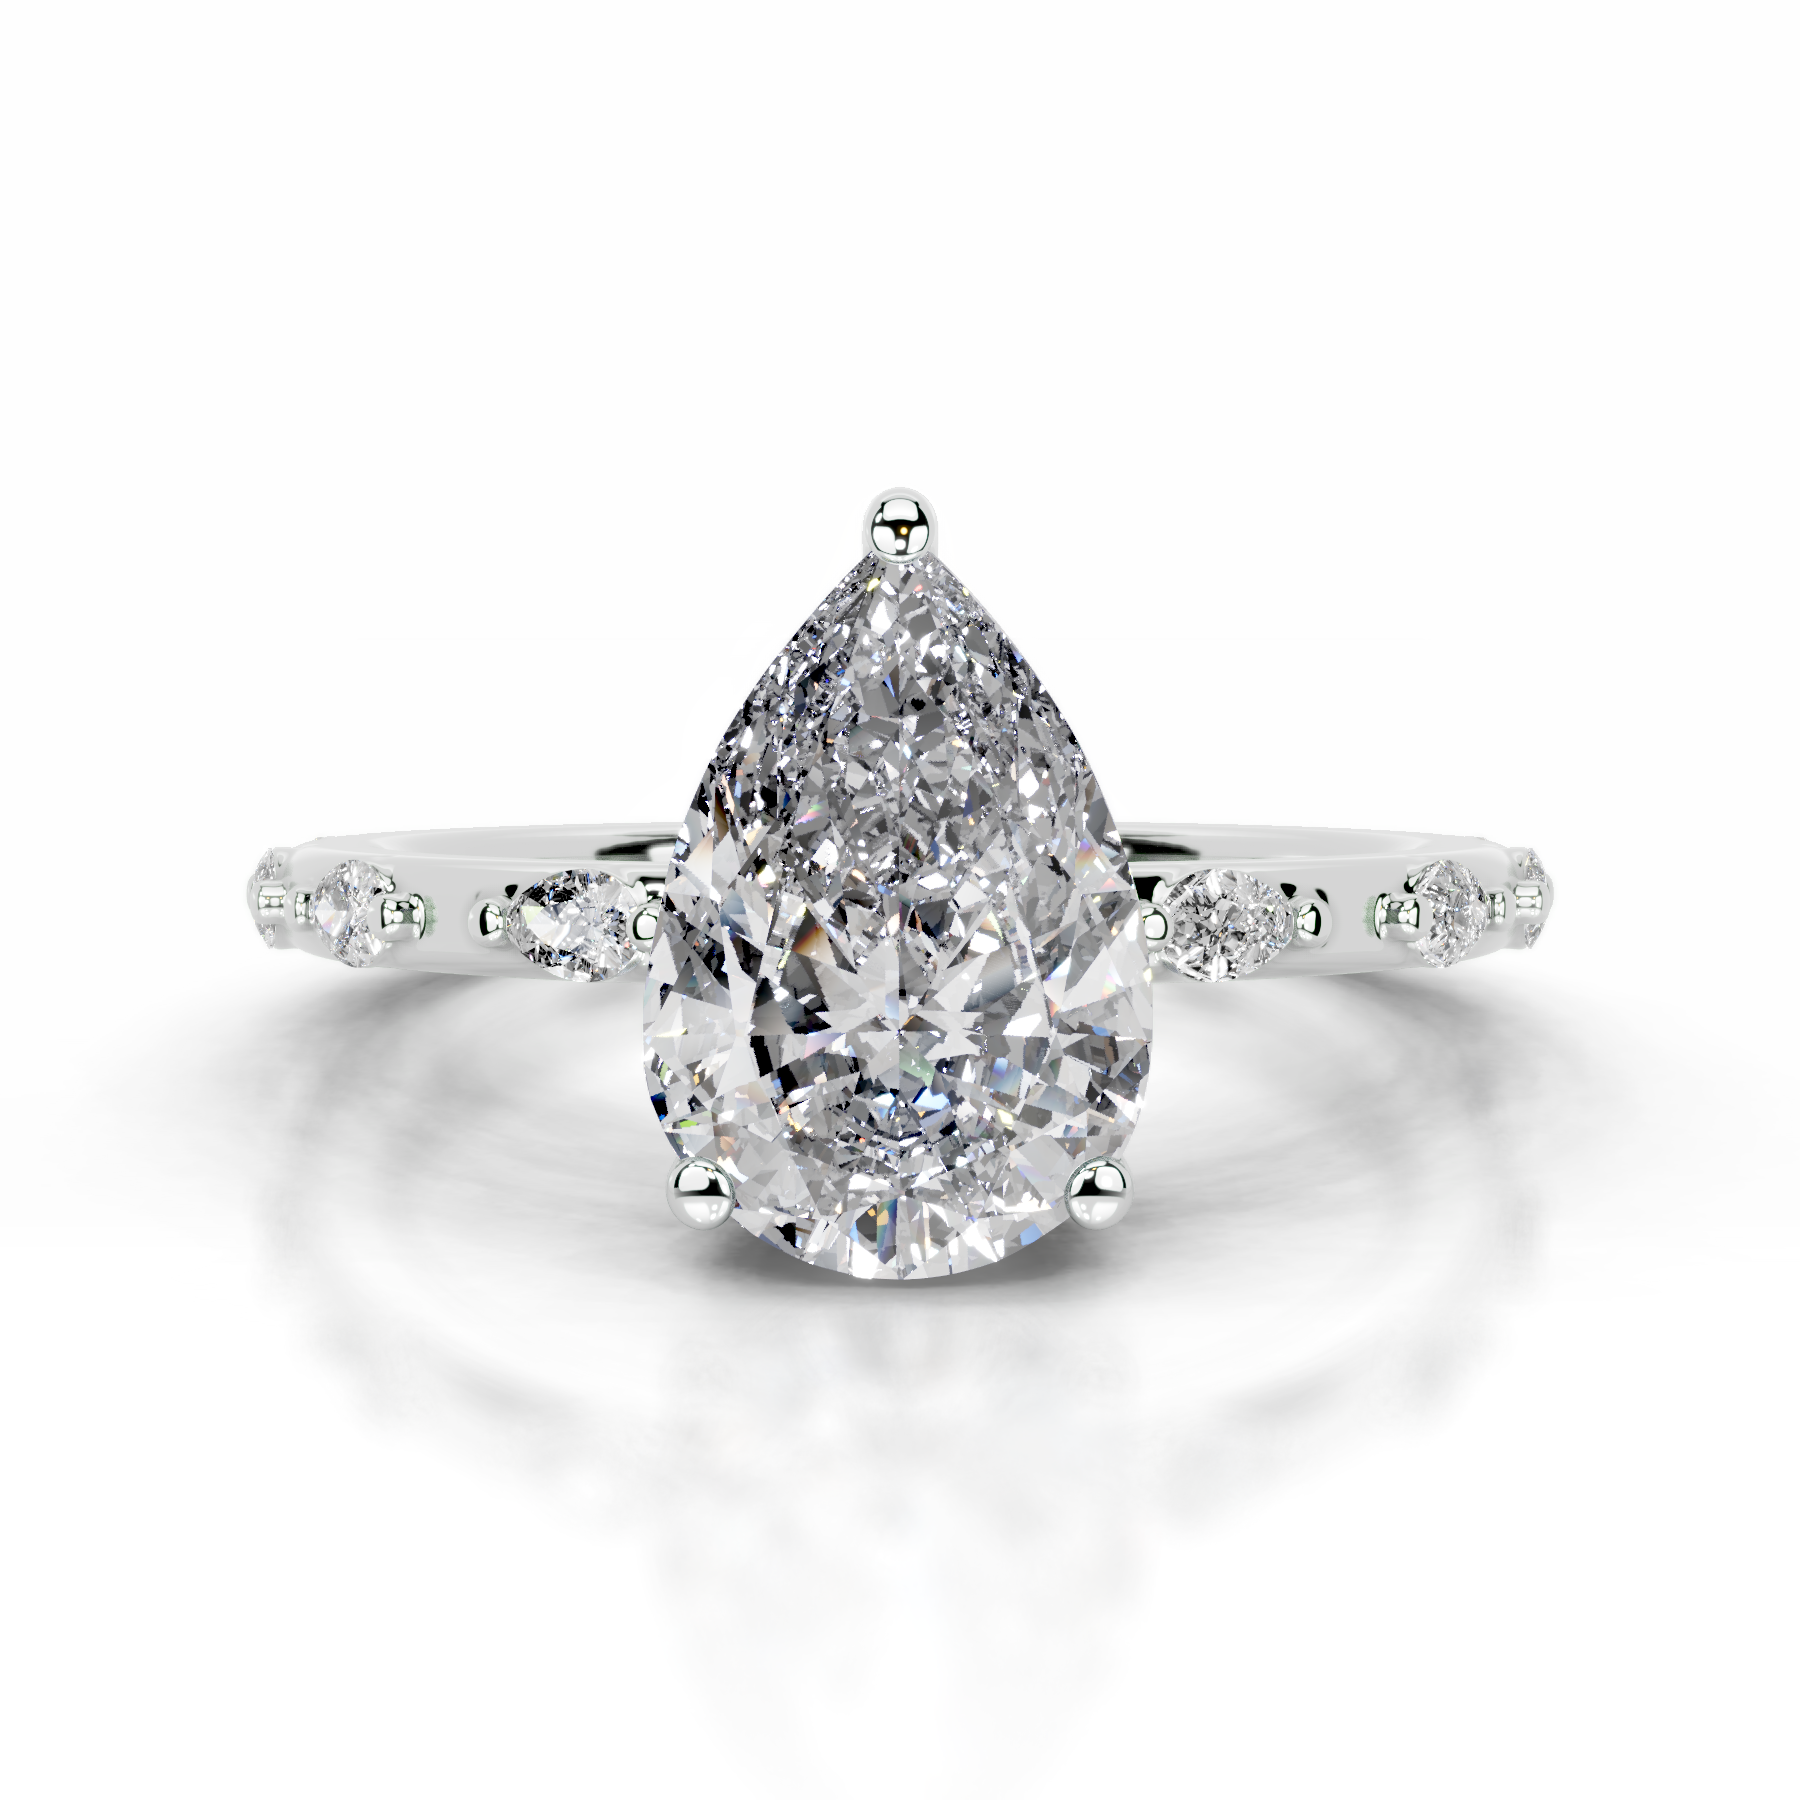 Nadya Diamond Engagement Ring   (2.2 Carat) -14K White Gold